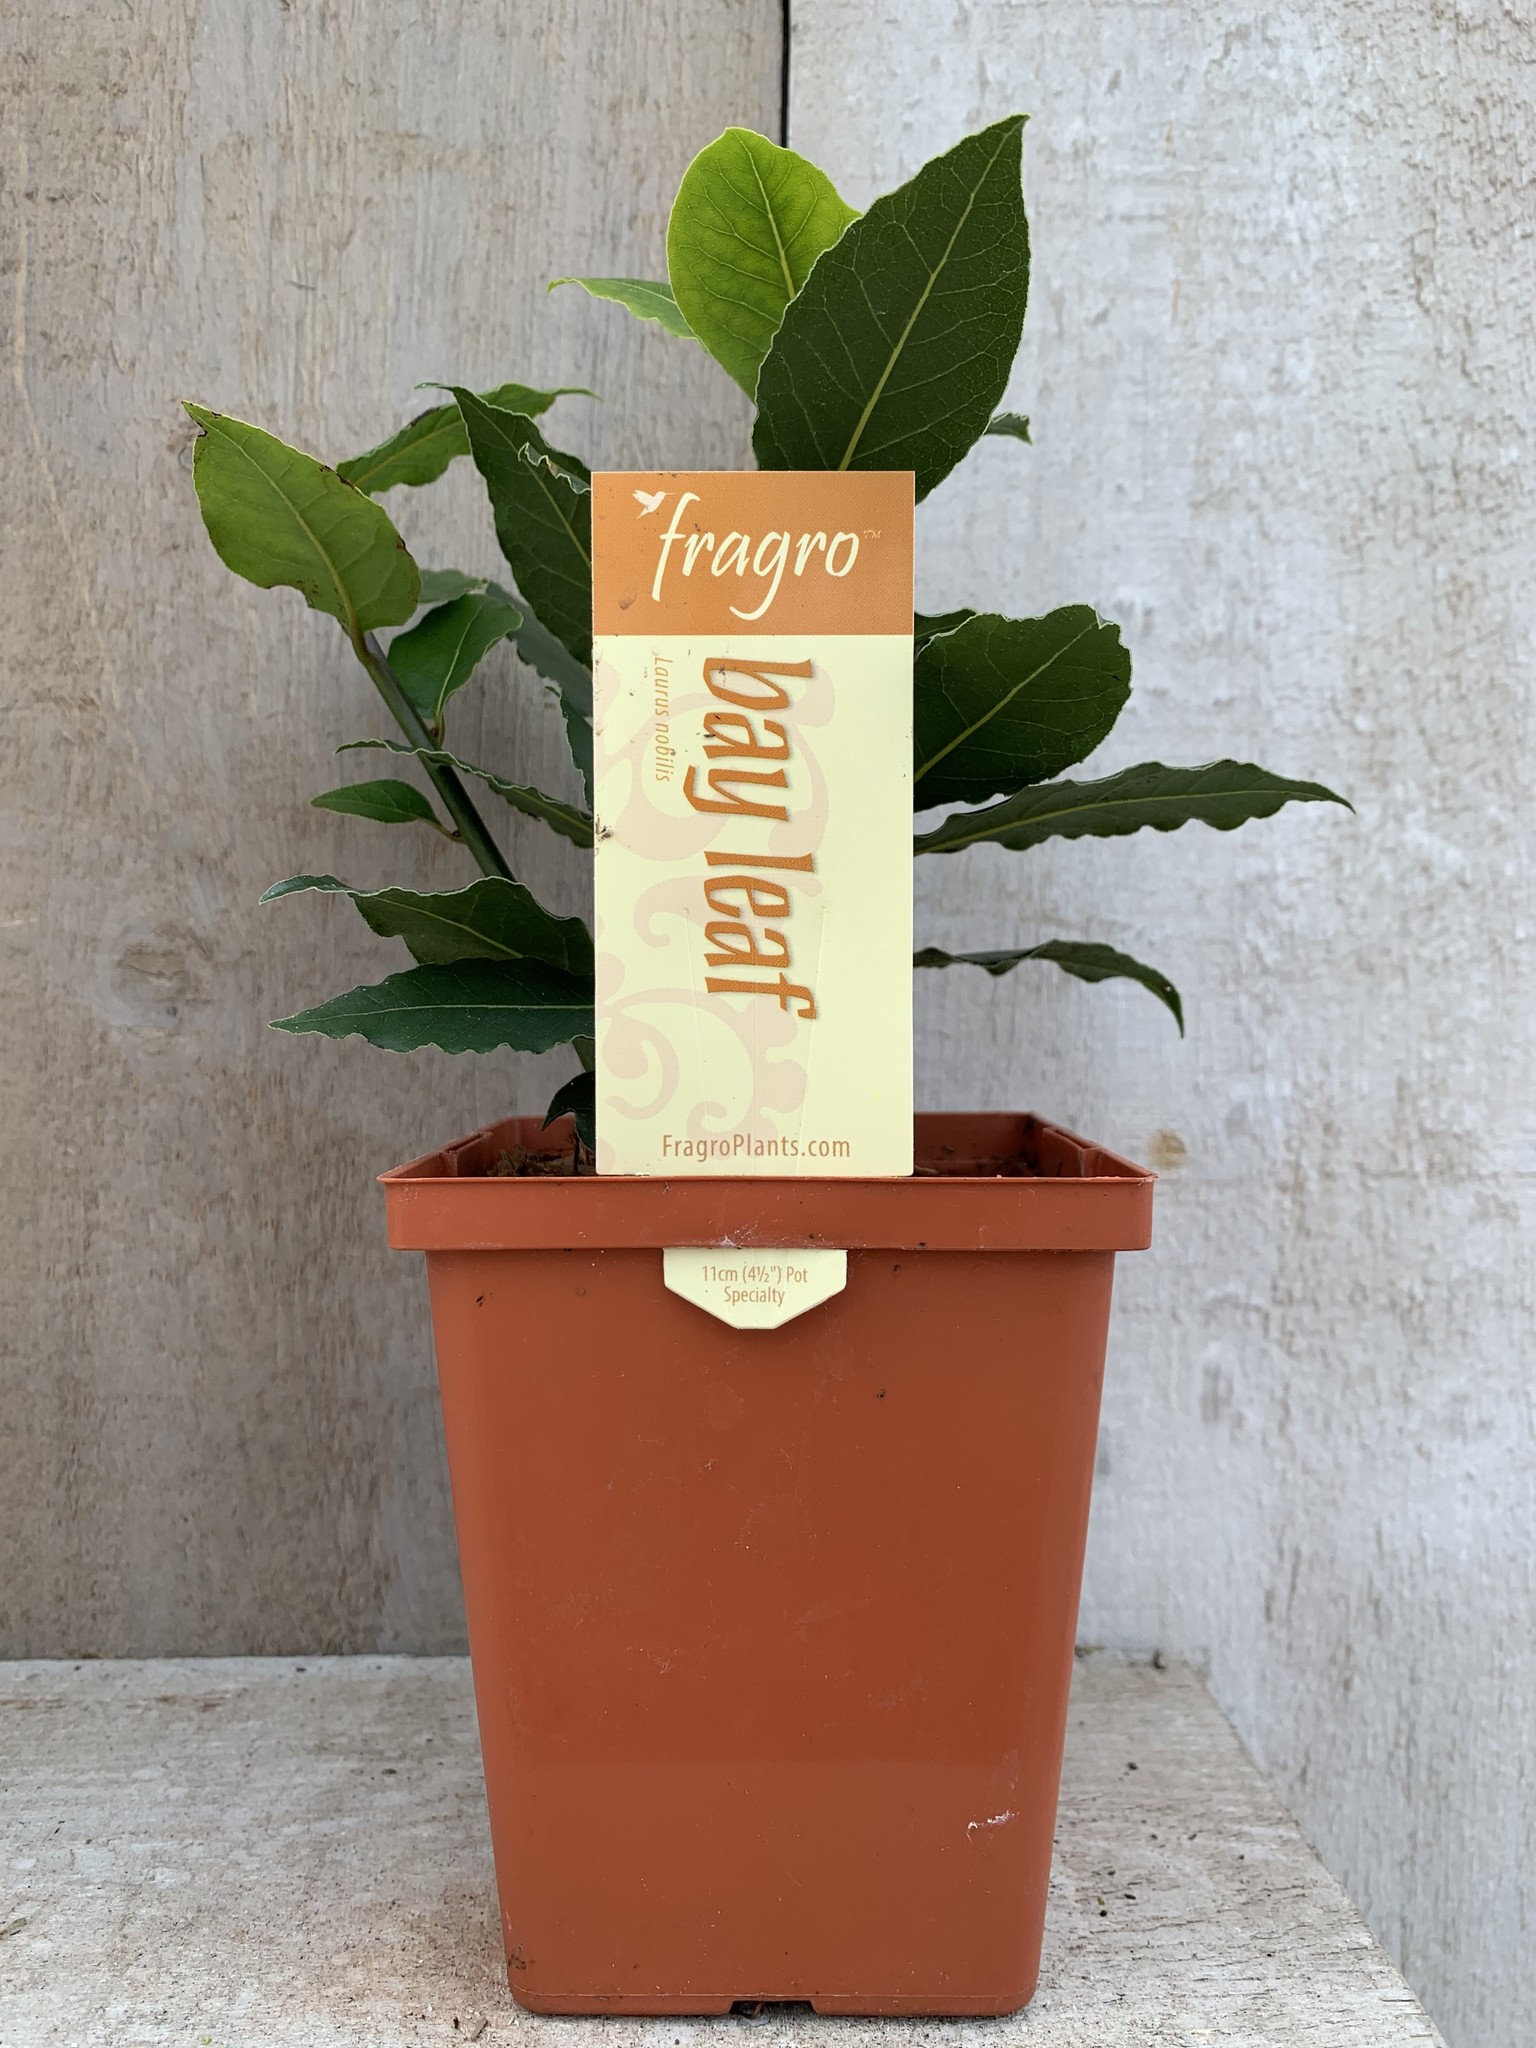 Fragro Bay Leaf 4.5" Specialty Herb